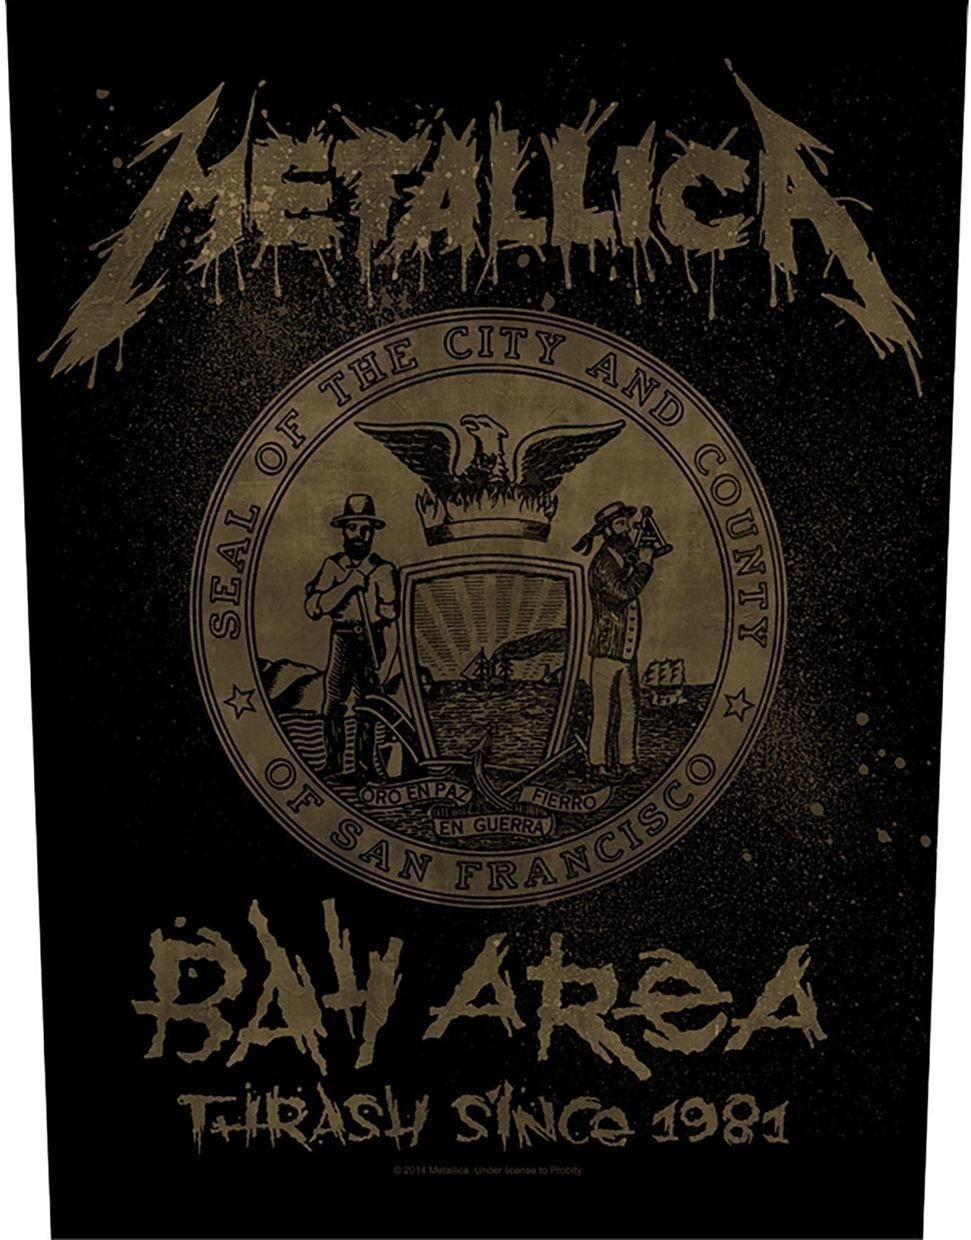 Nášivka Metallica Bay Area Thrash Nášivka